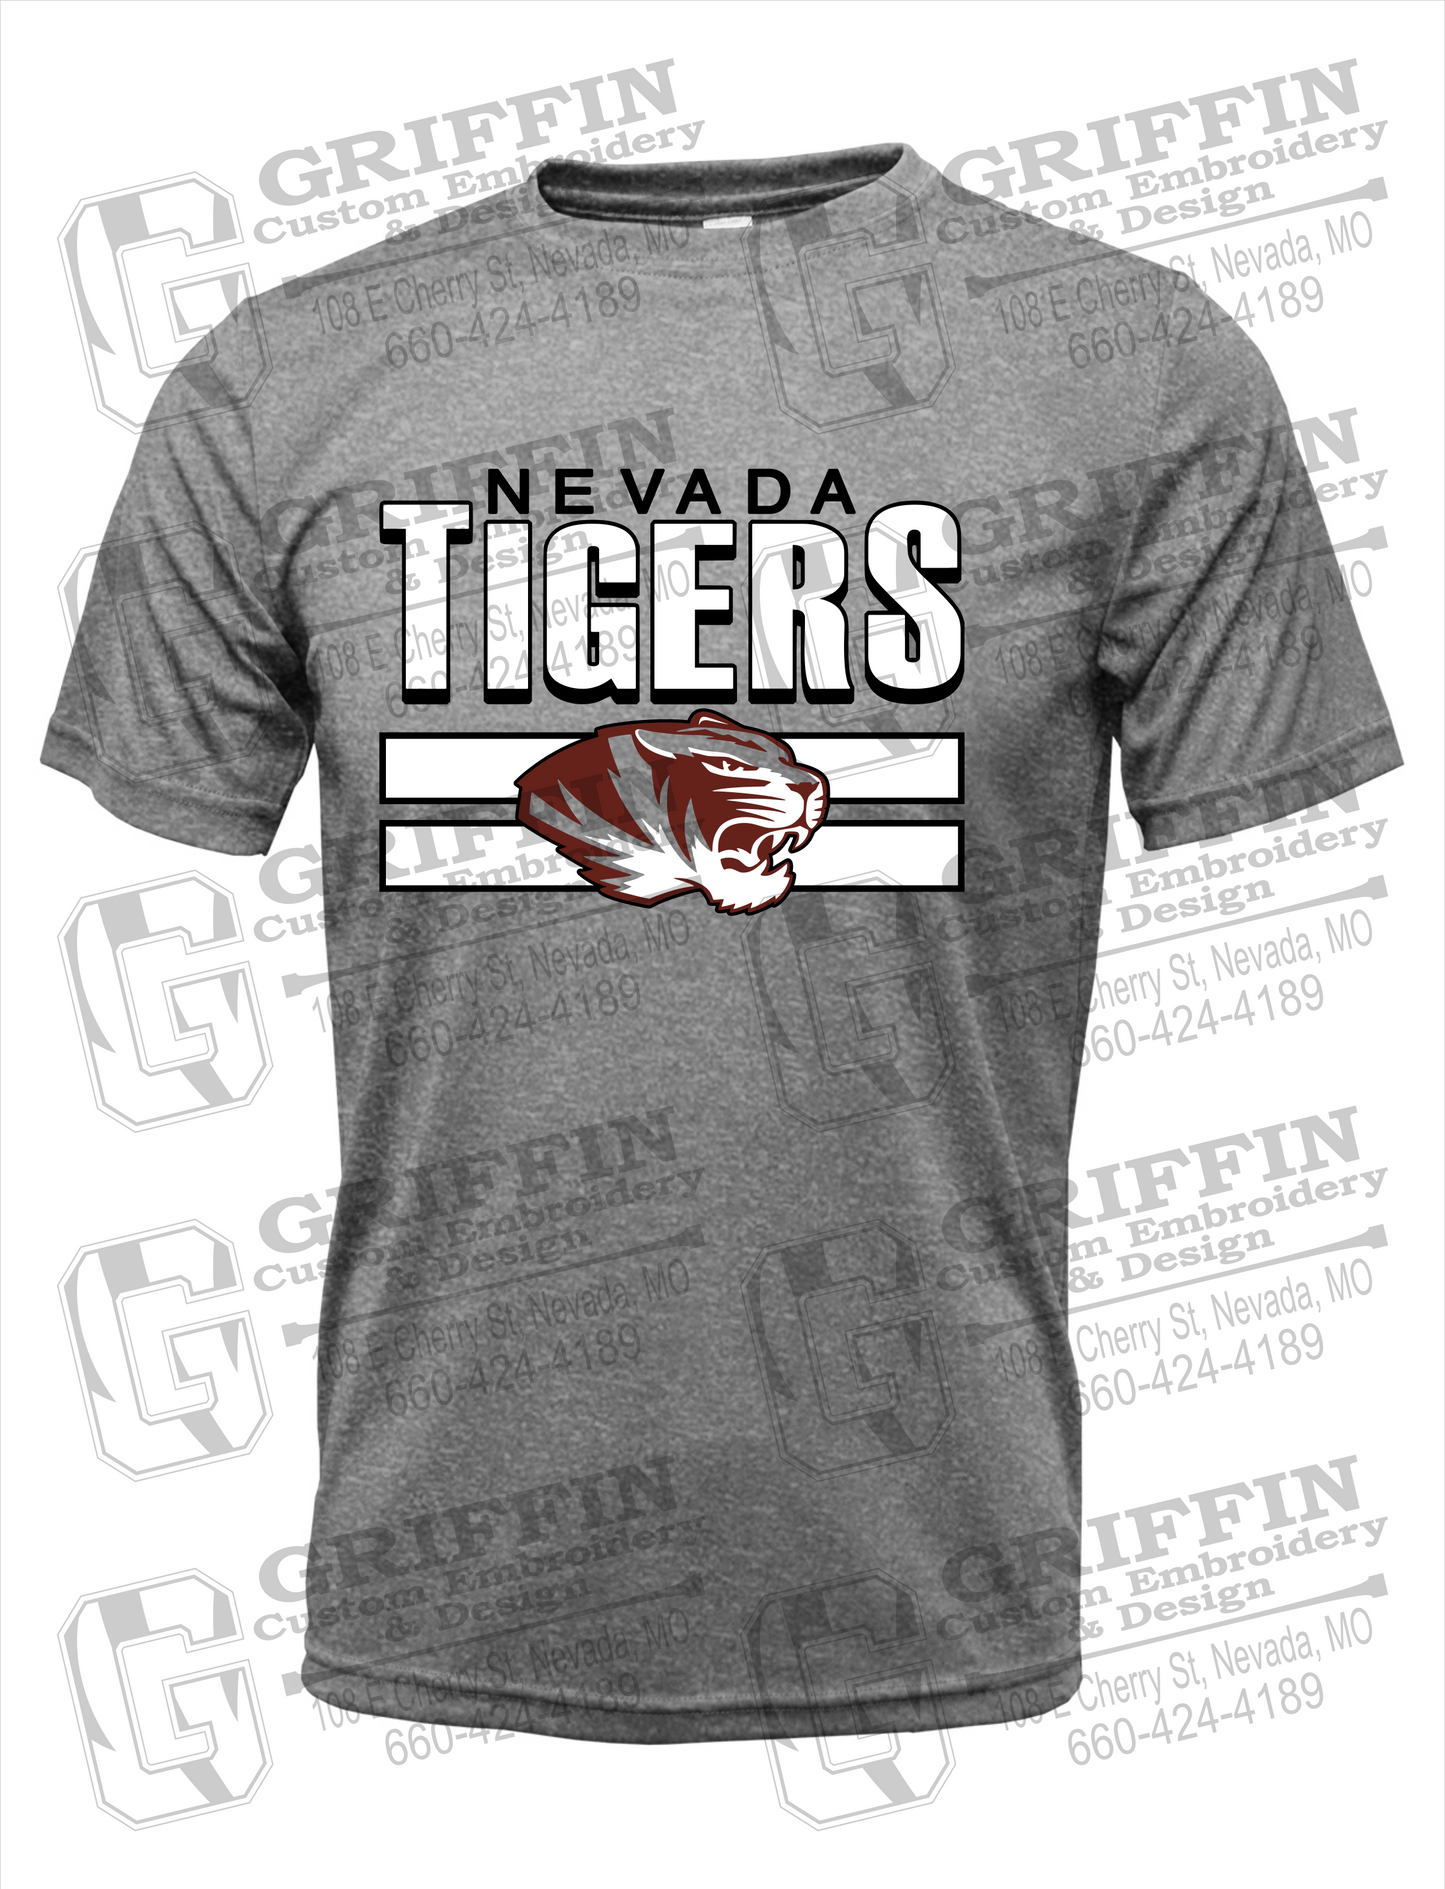 Nevada Tigers 22-B Dry-Fit T-Shirt